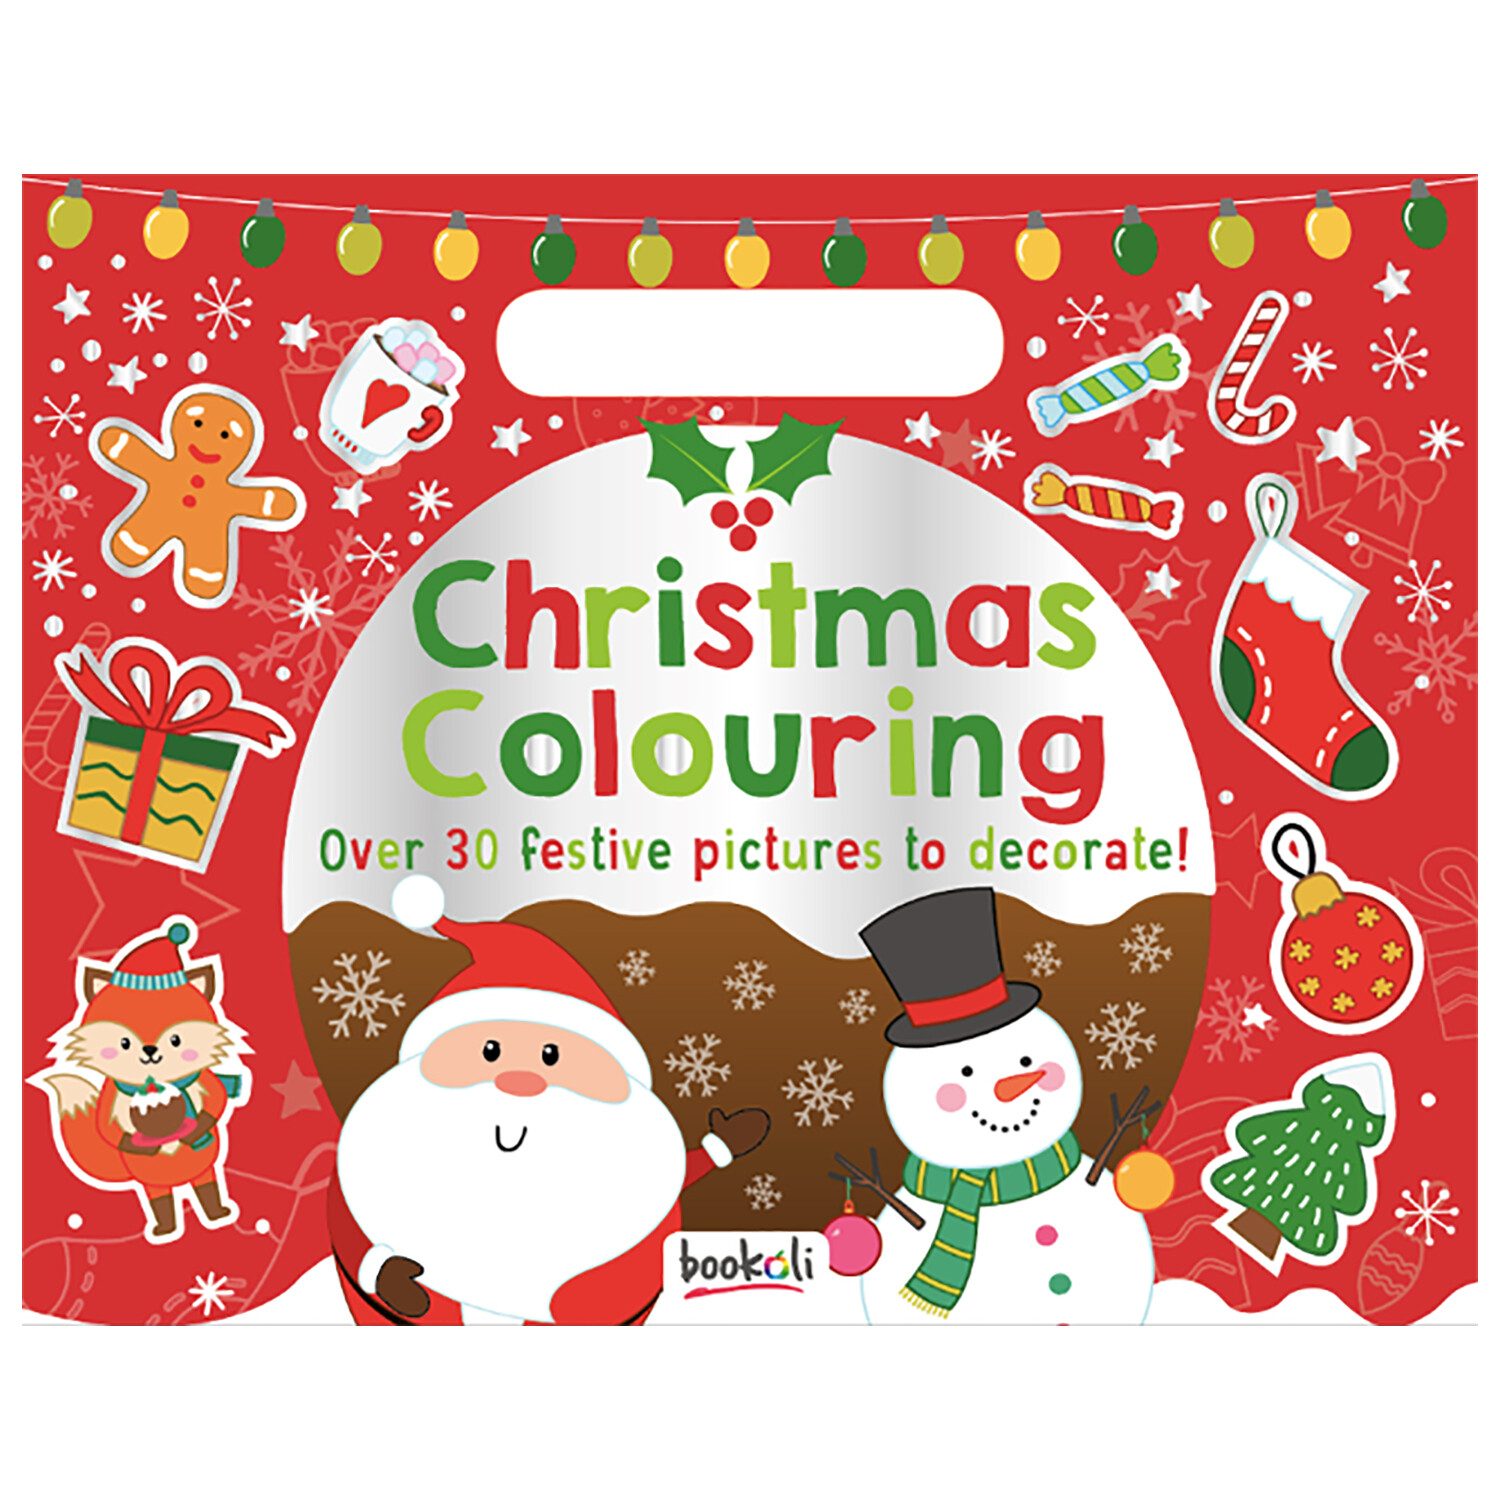 Christmas Colouring Image